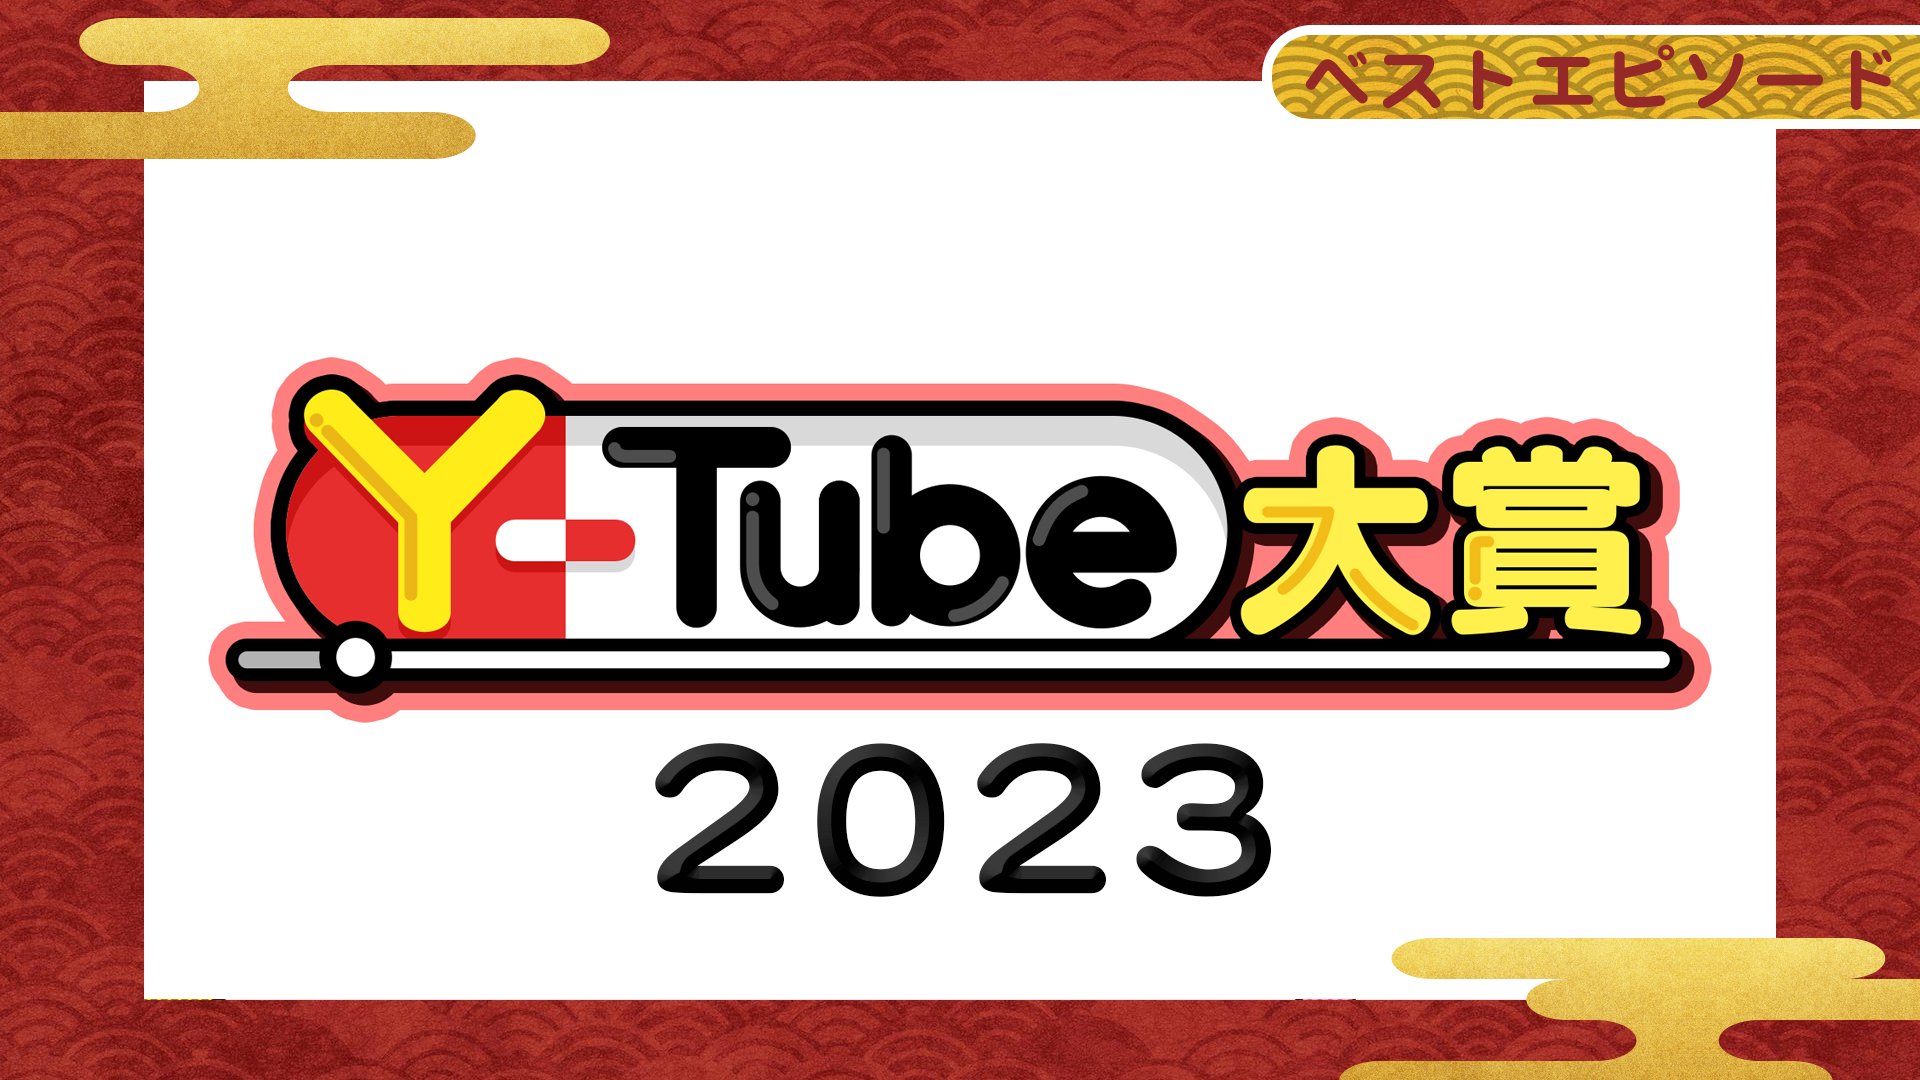 Y-Tube大賞 ベストエピソード 2023